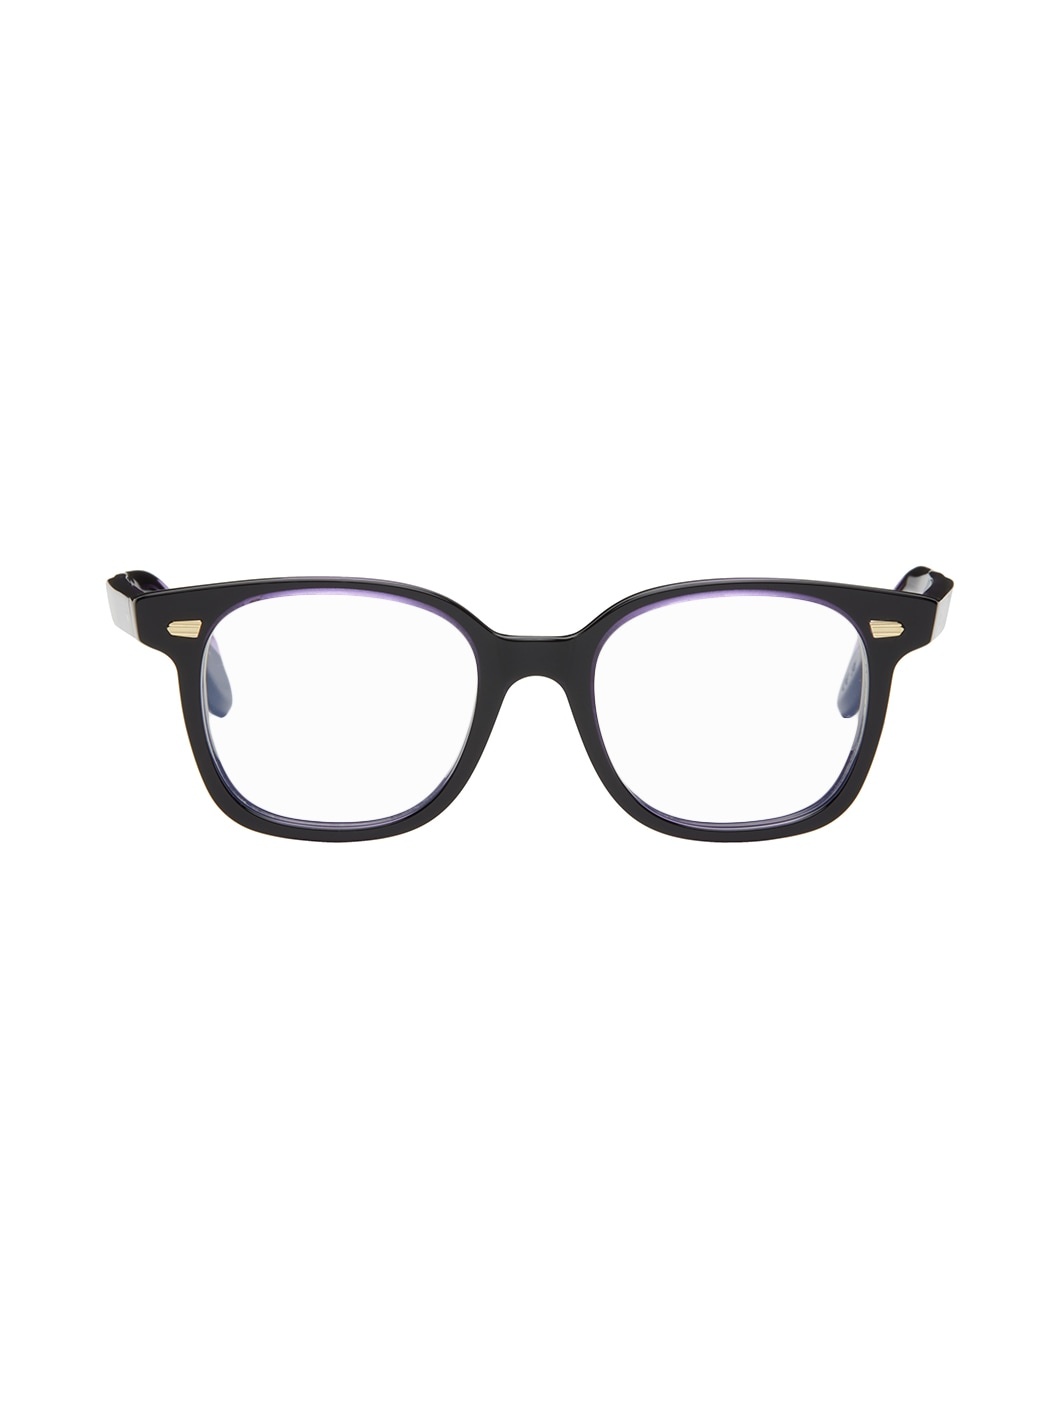 Black & Purple 9990 Glasses - 1